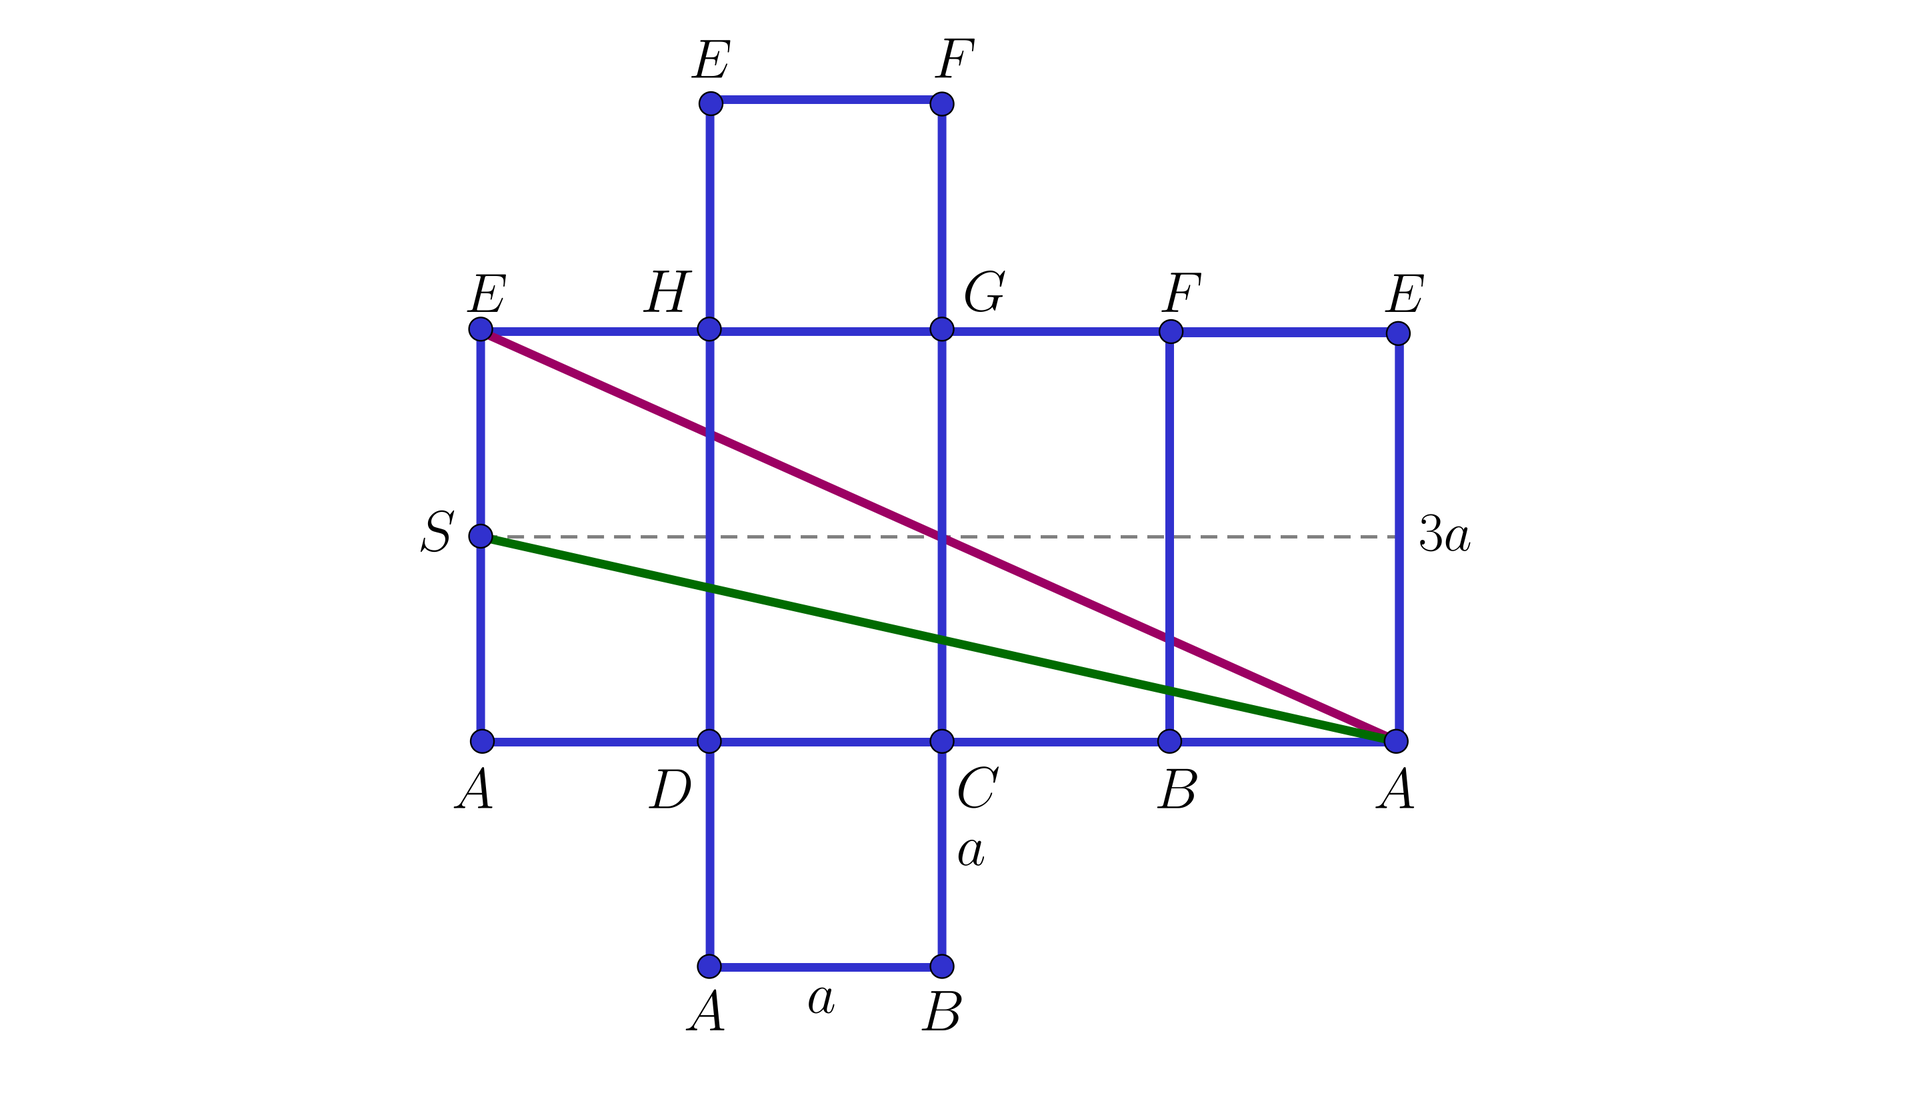 Grafika przedstawia siatkę  graniastosłupa prawidłowego czworokątnego ABCDEFGH. Siatka przedstawiona jest w taki sposób że cztery prostokąty o podstawie a i wysokości 3a  ułożone są przylegająco wysokościami. Powyżej oraz poniżej do drugiego prostokąta przylegają kwadraty. Wierzchołki opisane są tak , że zaczynając od lewej górne wierzchołki górnego kwadratu to EF  ,górne wierzchołki prostokątów to EHGFE ,dolne wierzchołki prostokątów to ADCBA a dolne wierzchołki dolnego kwadratu to AB. Z wierzchołka E w pierwszym prostokącie do wierzchołka A w ostatnim prostokącie poprowadzono czerwoną linię a z wierzchołka S w połowie wysokości EA poprowadzono zieloną linię do wierzchołka A.